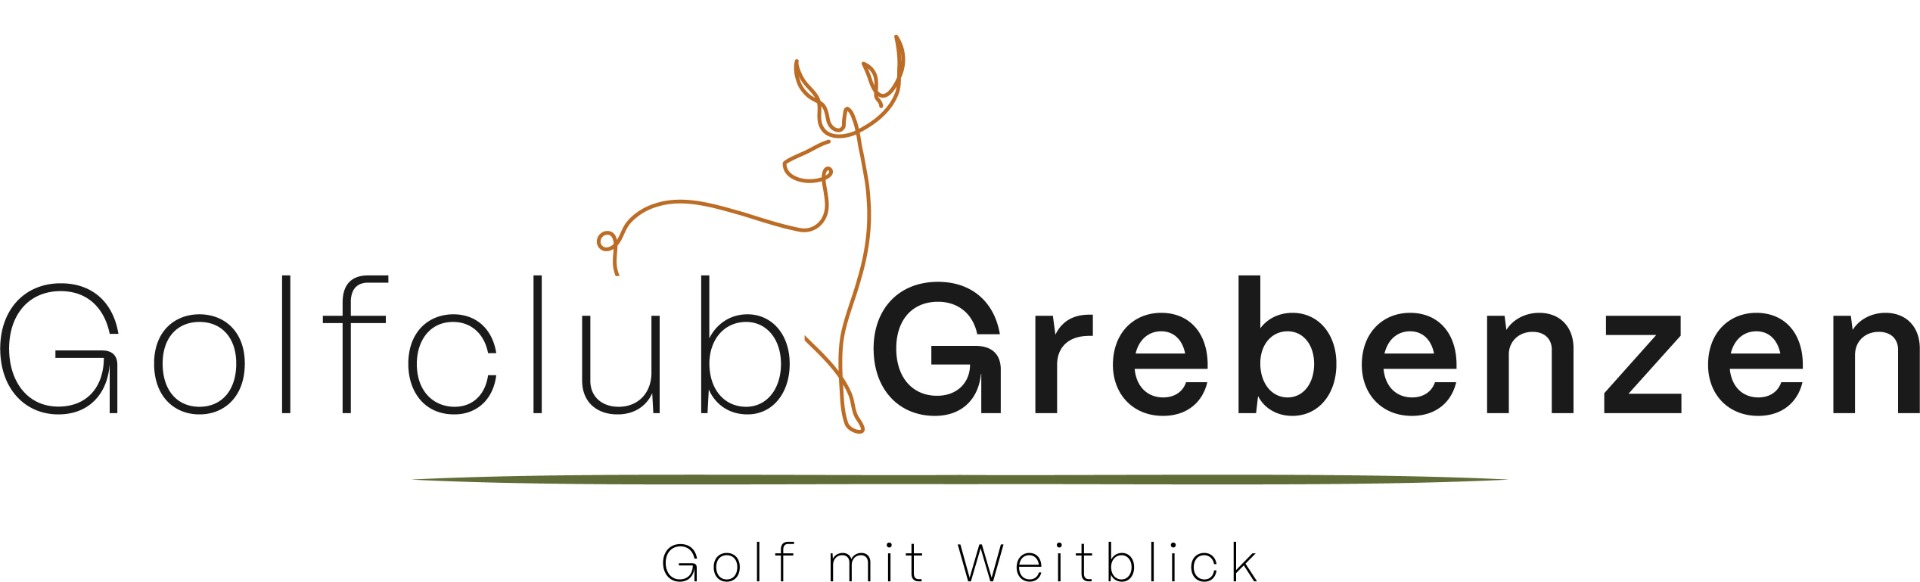 Golfclub Grebenzen Mariahof